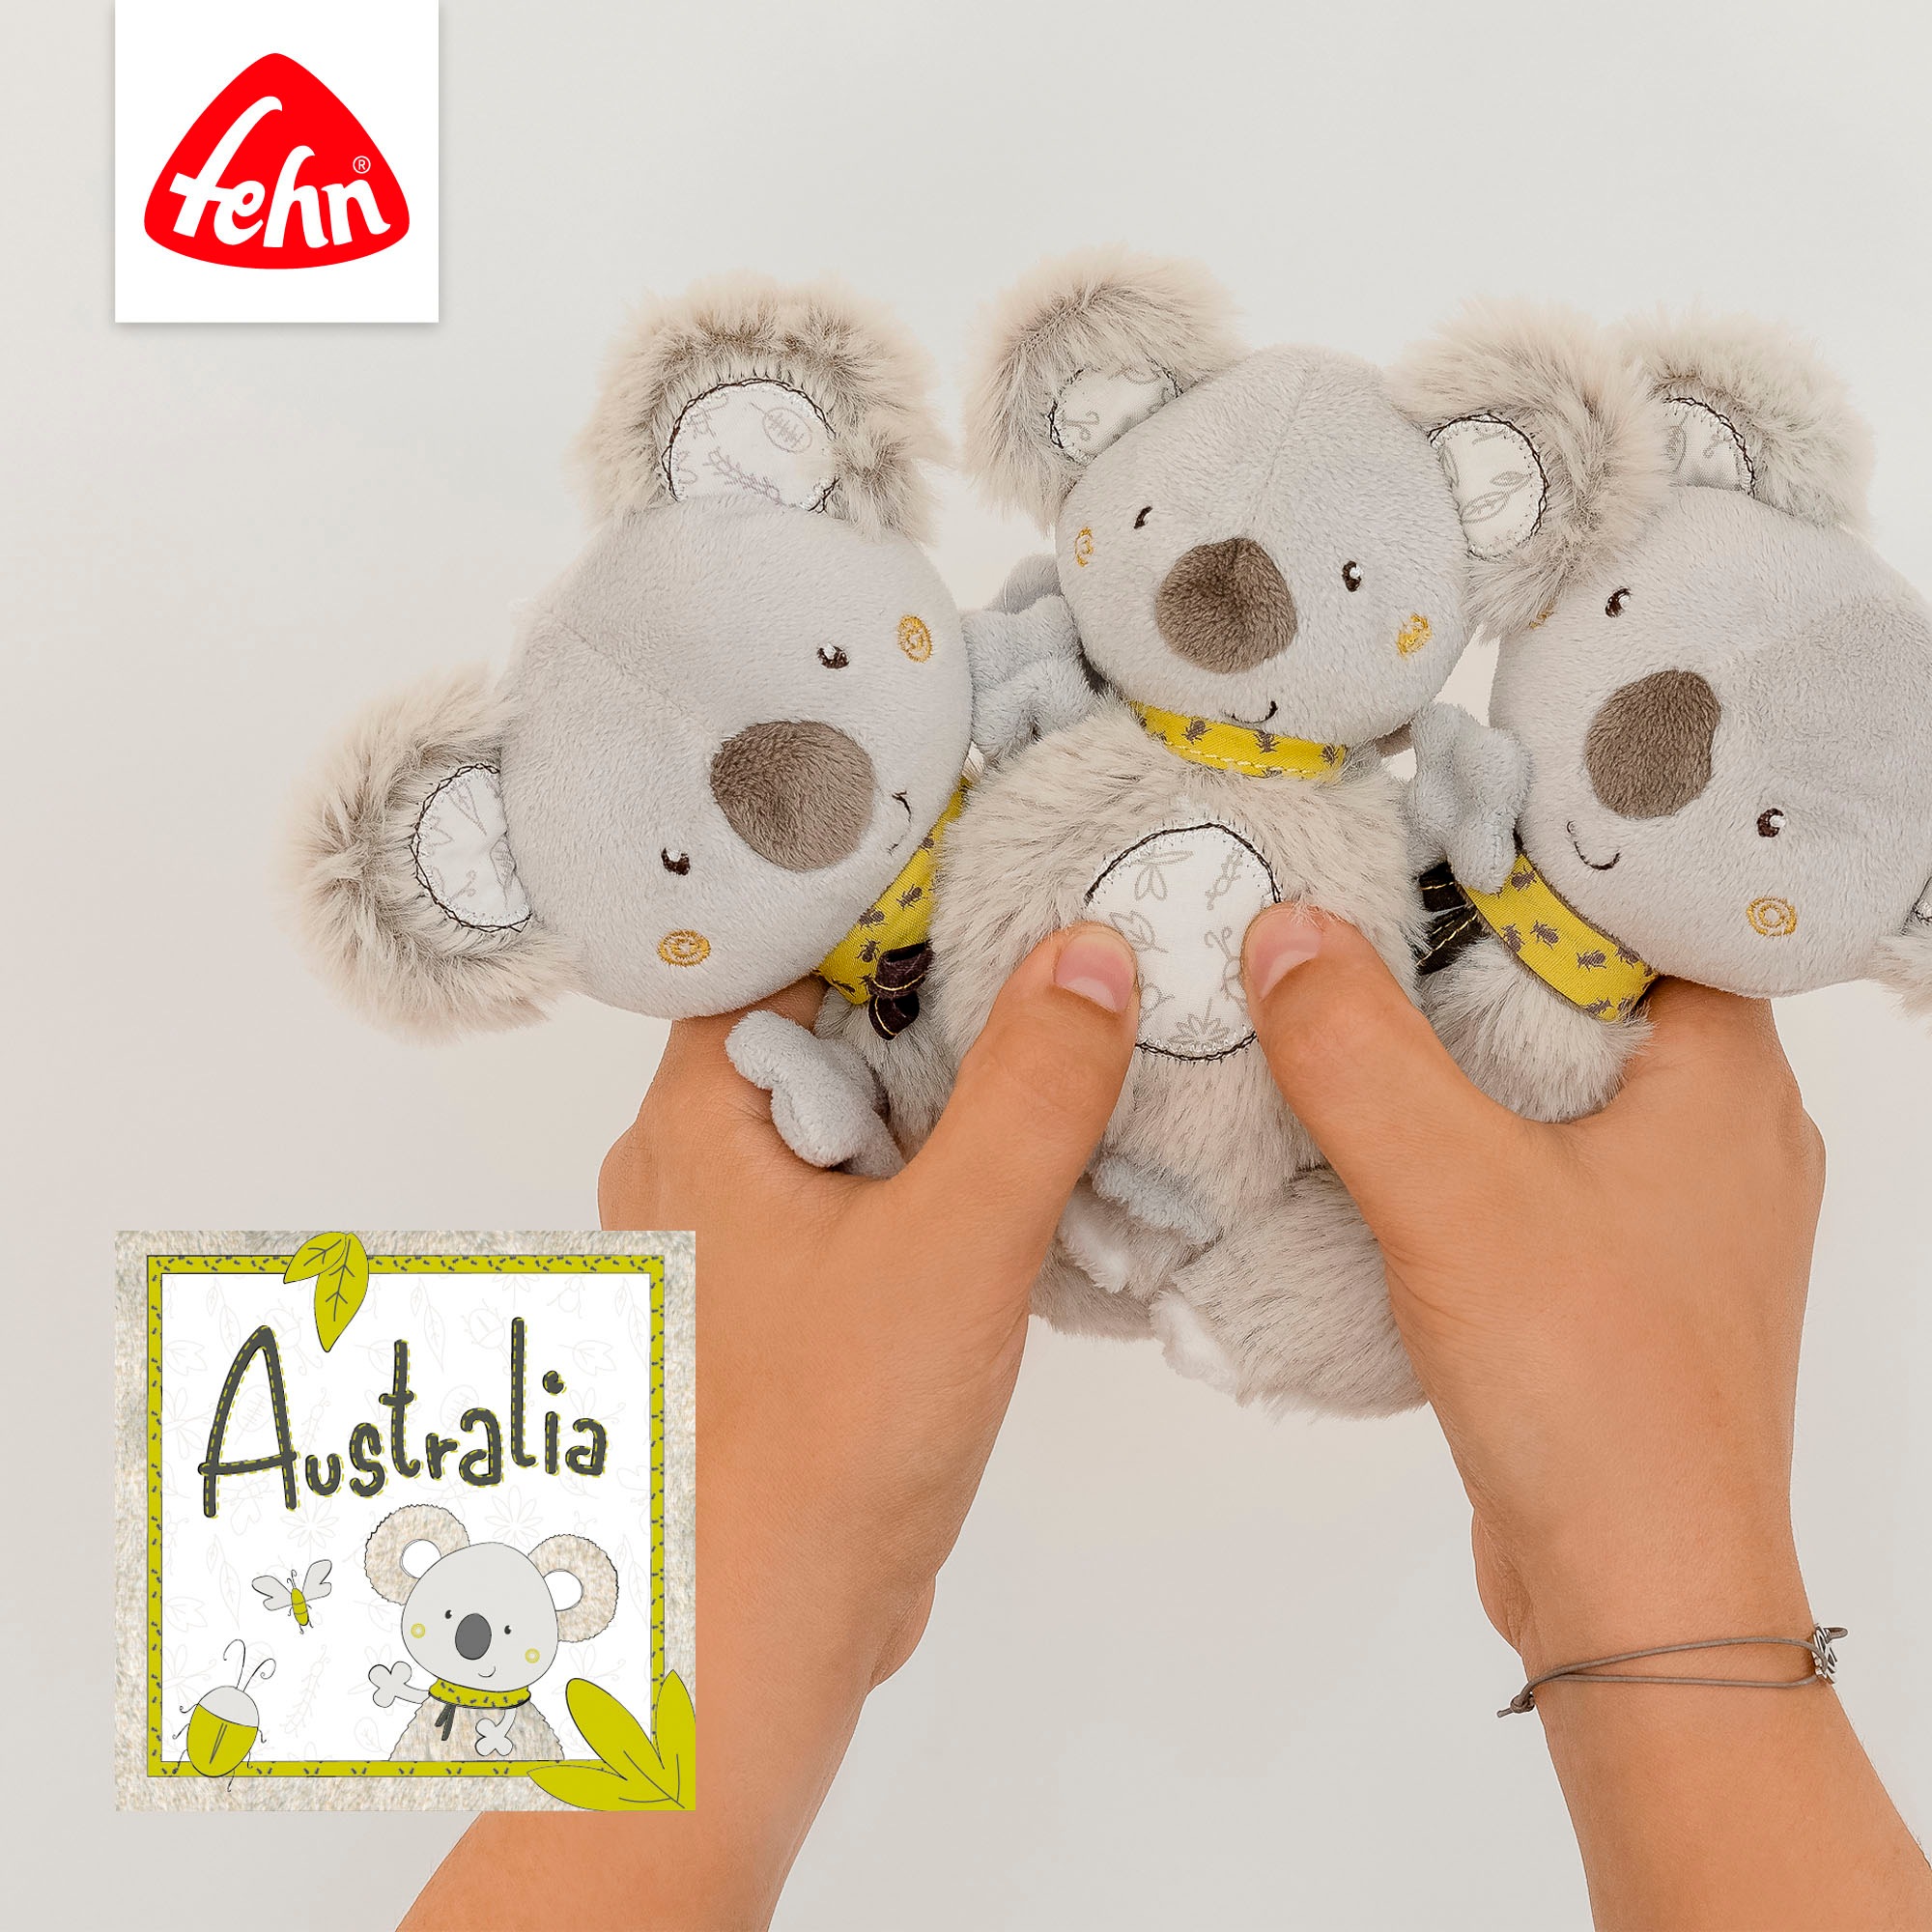 Fehn Wärmekissen »Australia, Koala«, mit entnehmbarem Wärme-/Kältesäckchen